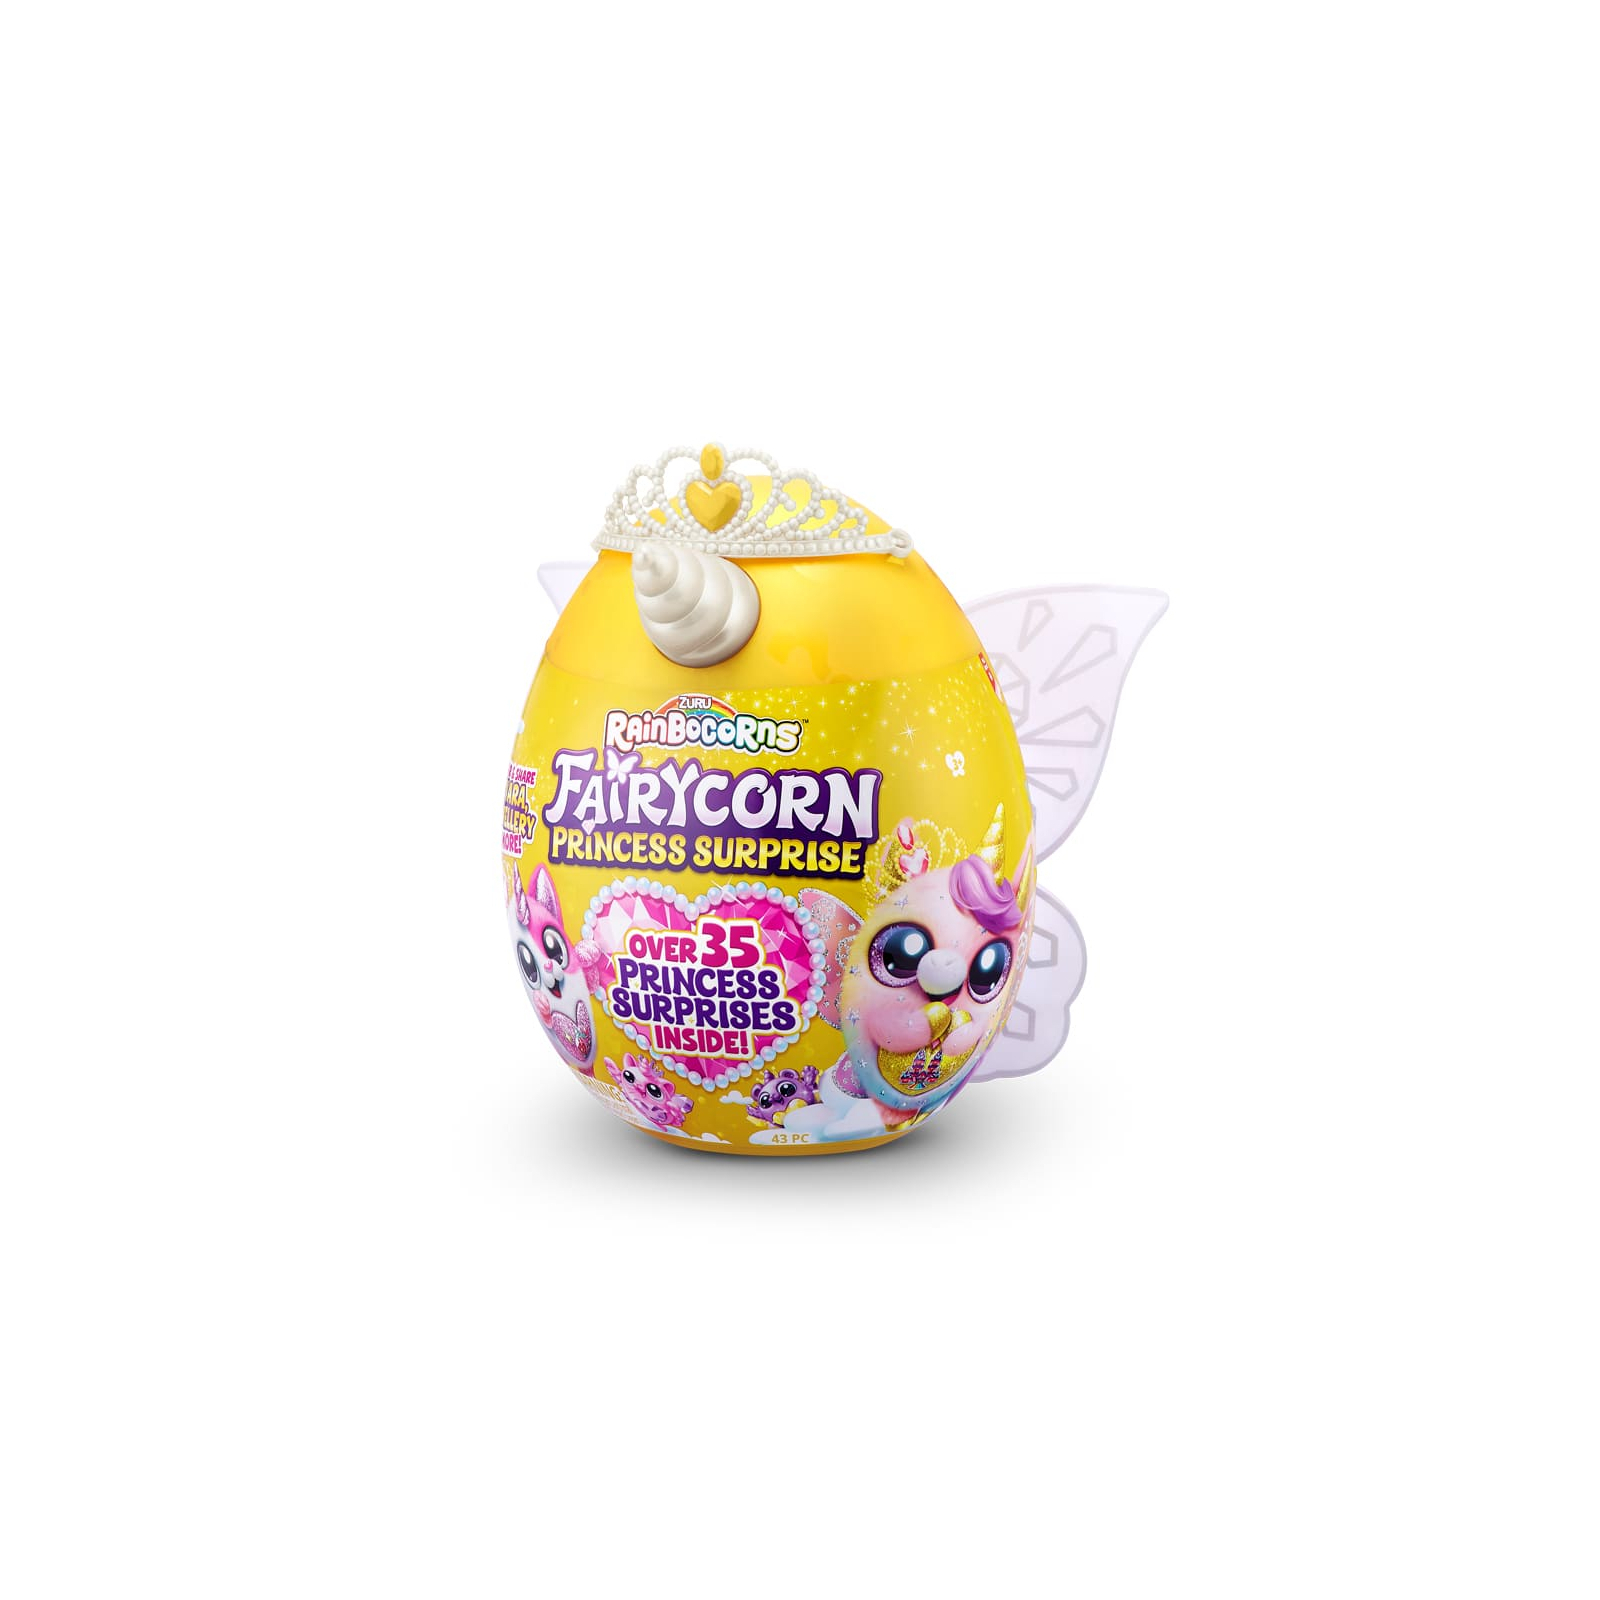 Мягкая игрушка Rainbocorns сюрприз G серия Fairycorn Princess (9281G)